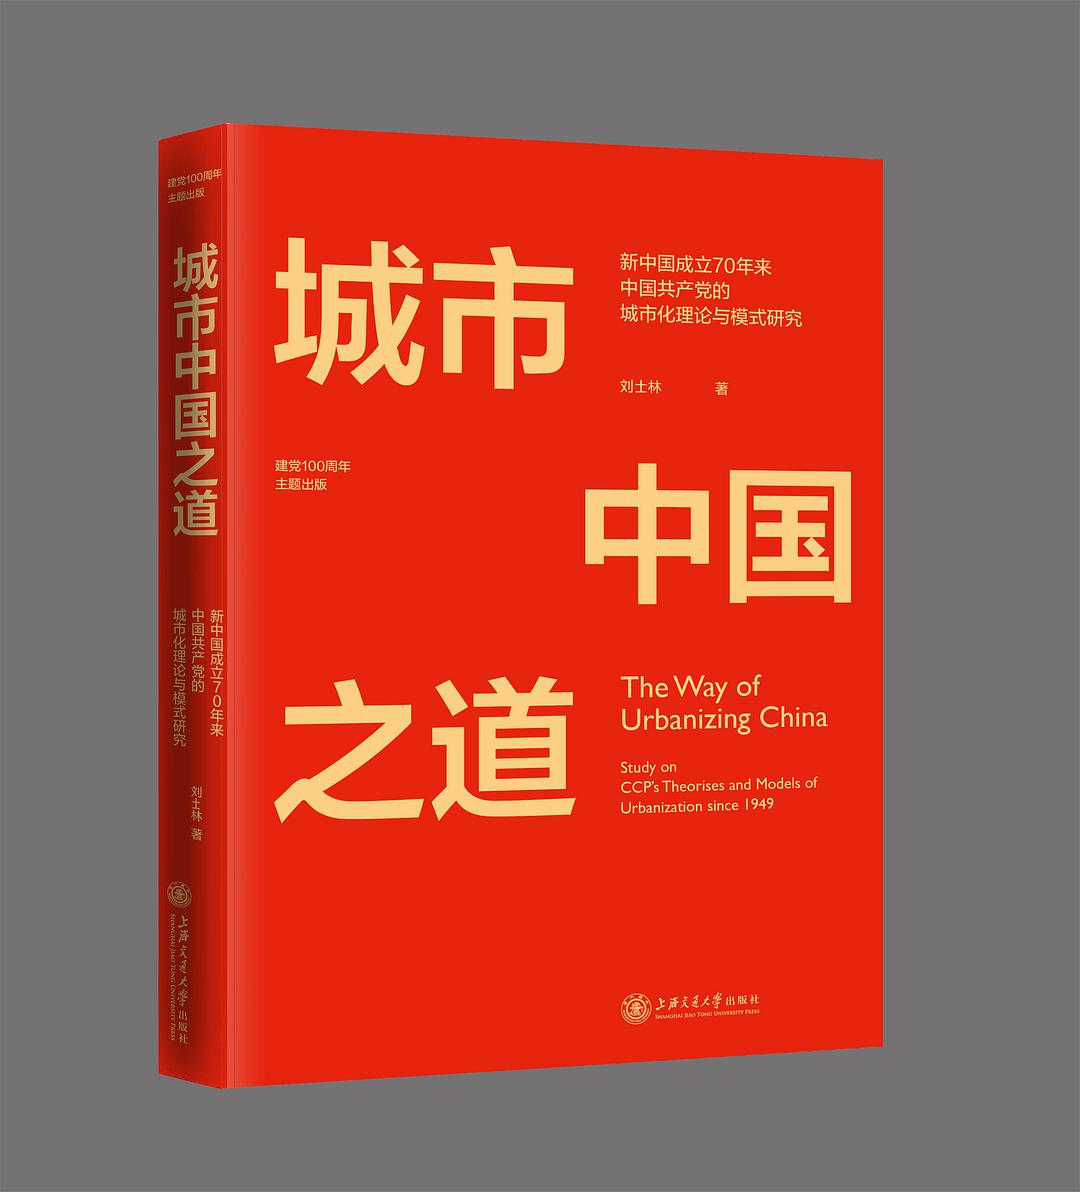 城市中国之道 新中国成立70年来中国共产党的城市化理论与模式研究 study on CCP's theories and models of urbanization since 1949